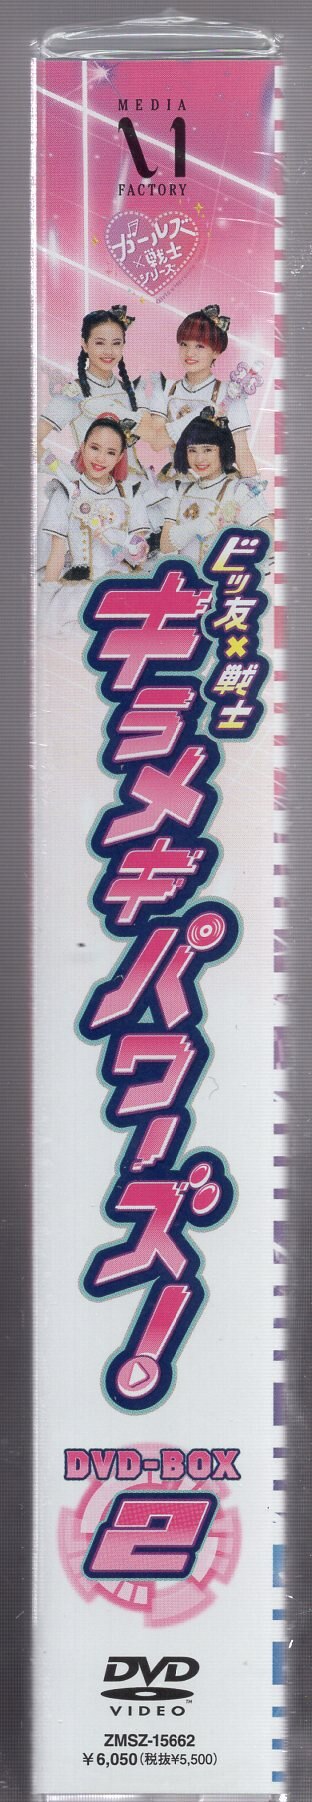 ビッ友×戦士 キラメキパワーズ! DVD BOX vol.1＆vol.2